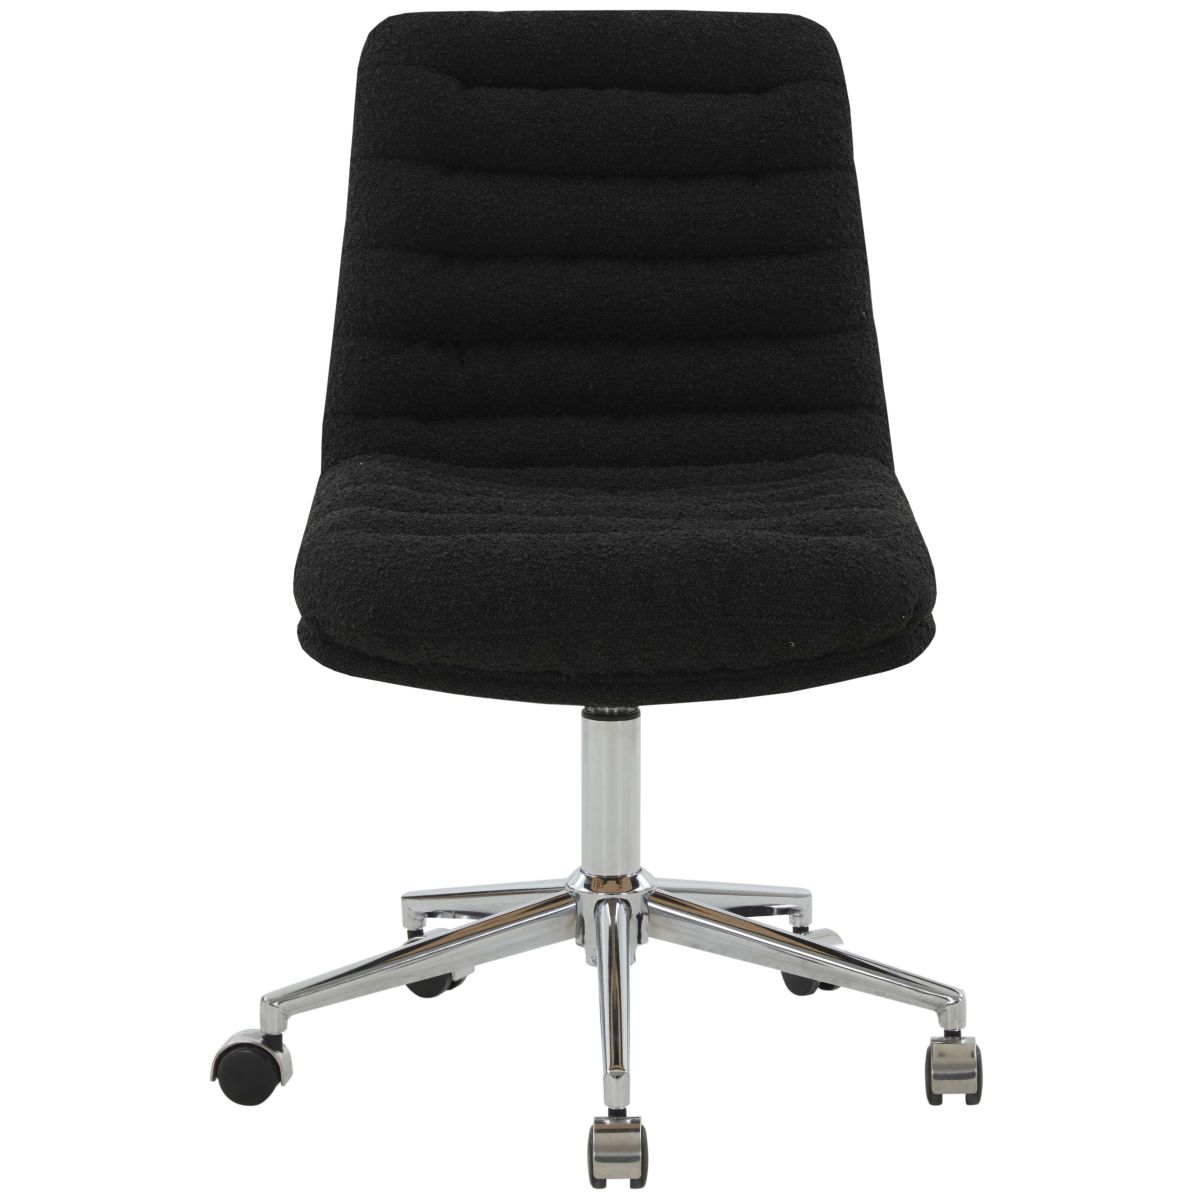 Safavieh Couture Decolin Swivel Desk Chair - Black / Silver